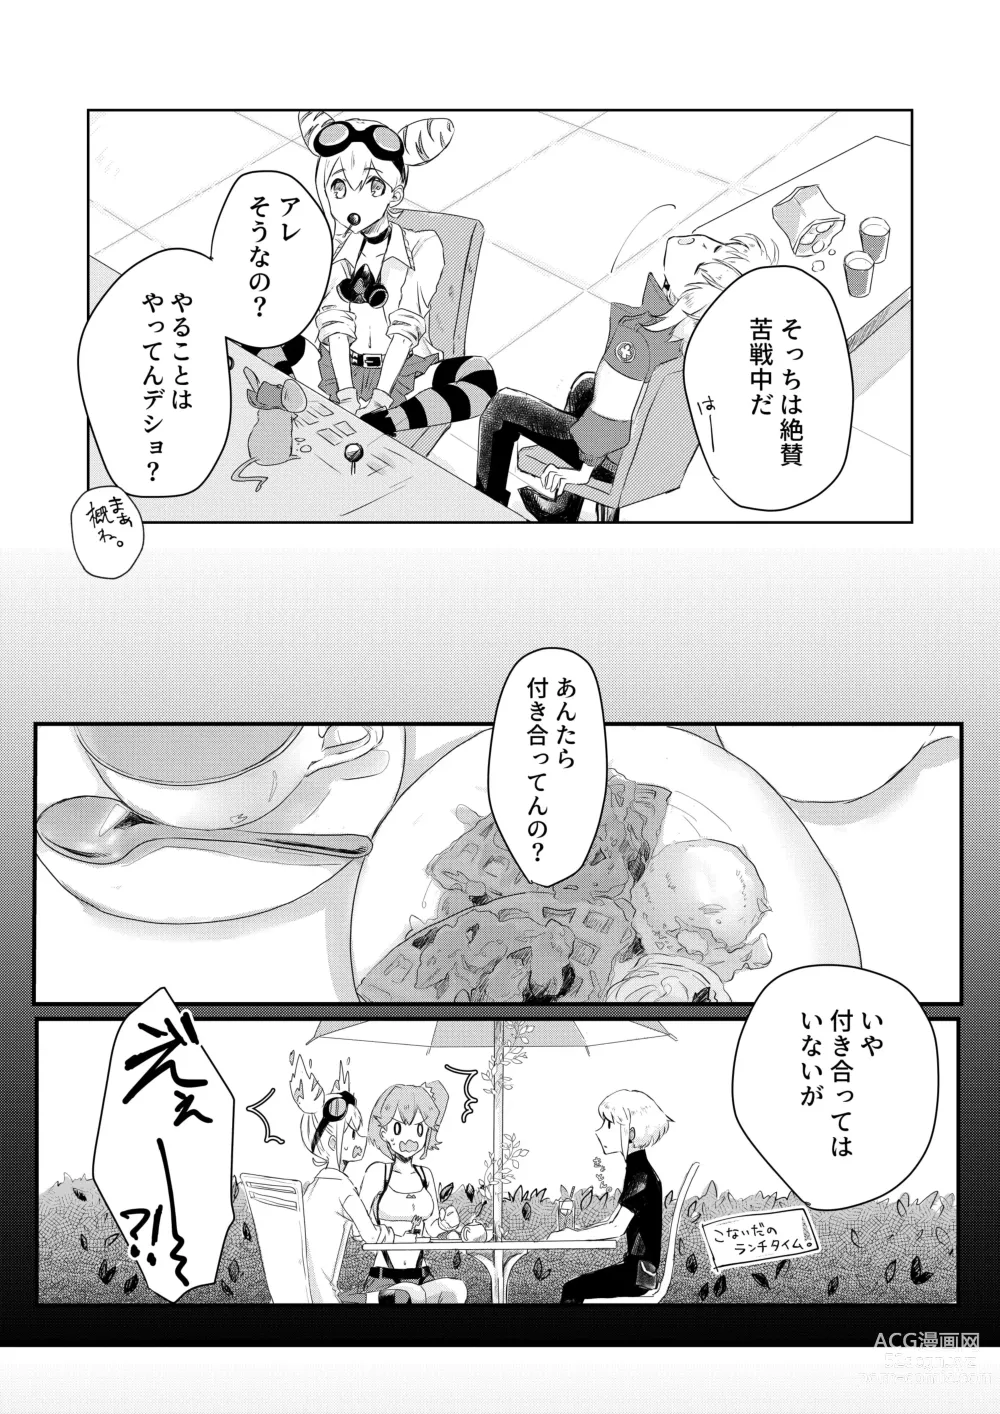 Page 16 of doujinshi Ohayou, Oyasumi, Mata Ashita.